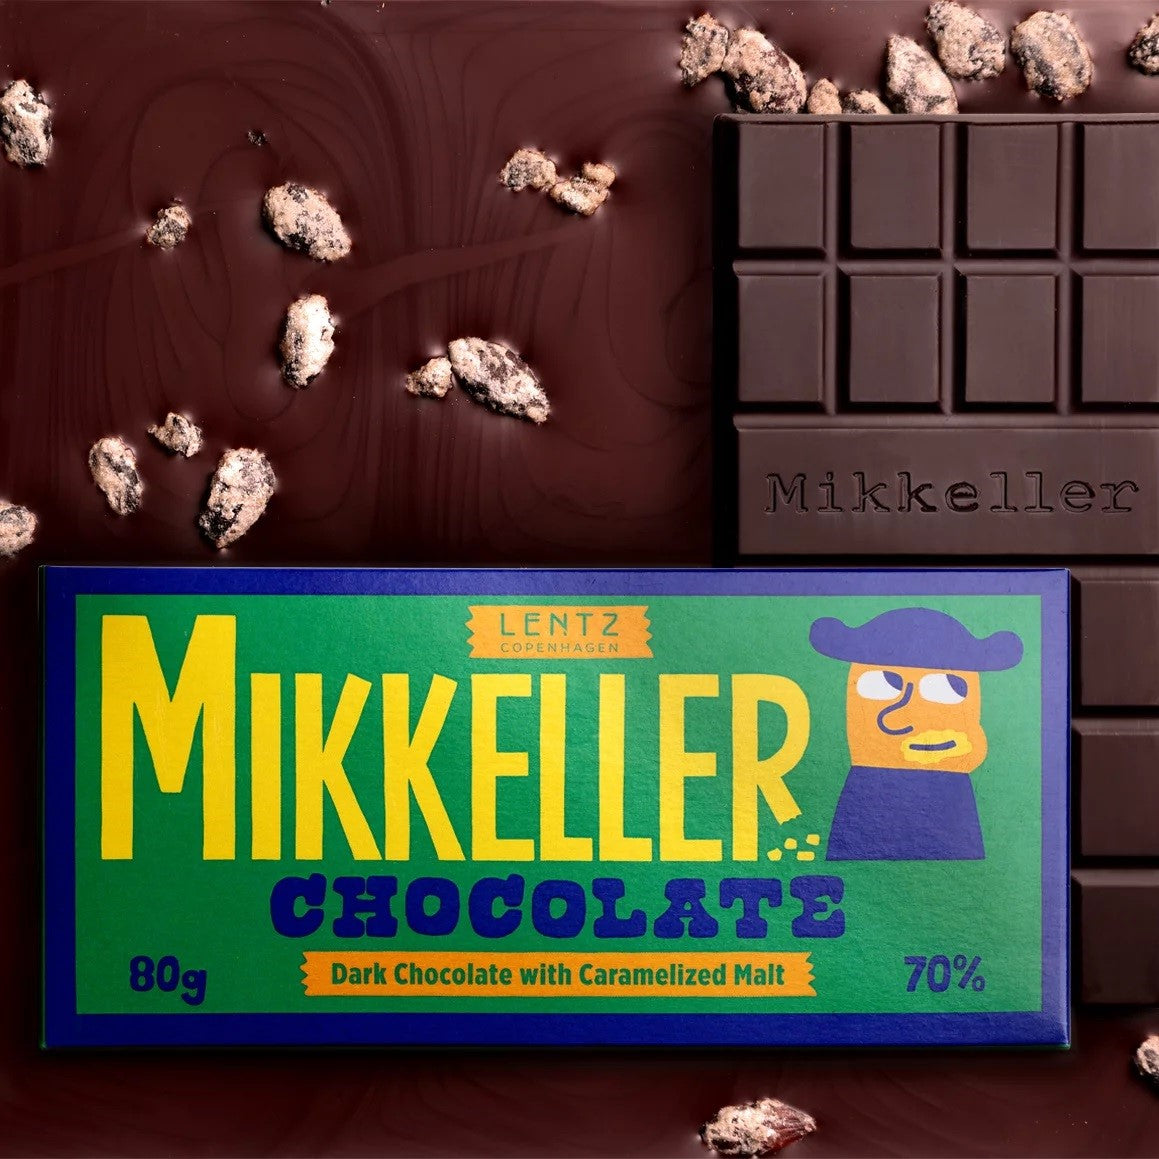 Mikkeller - Dark Chocolate with Caramelised Malt 70%